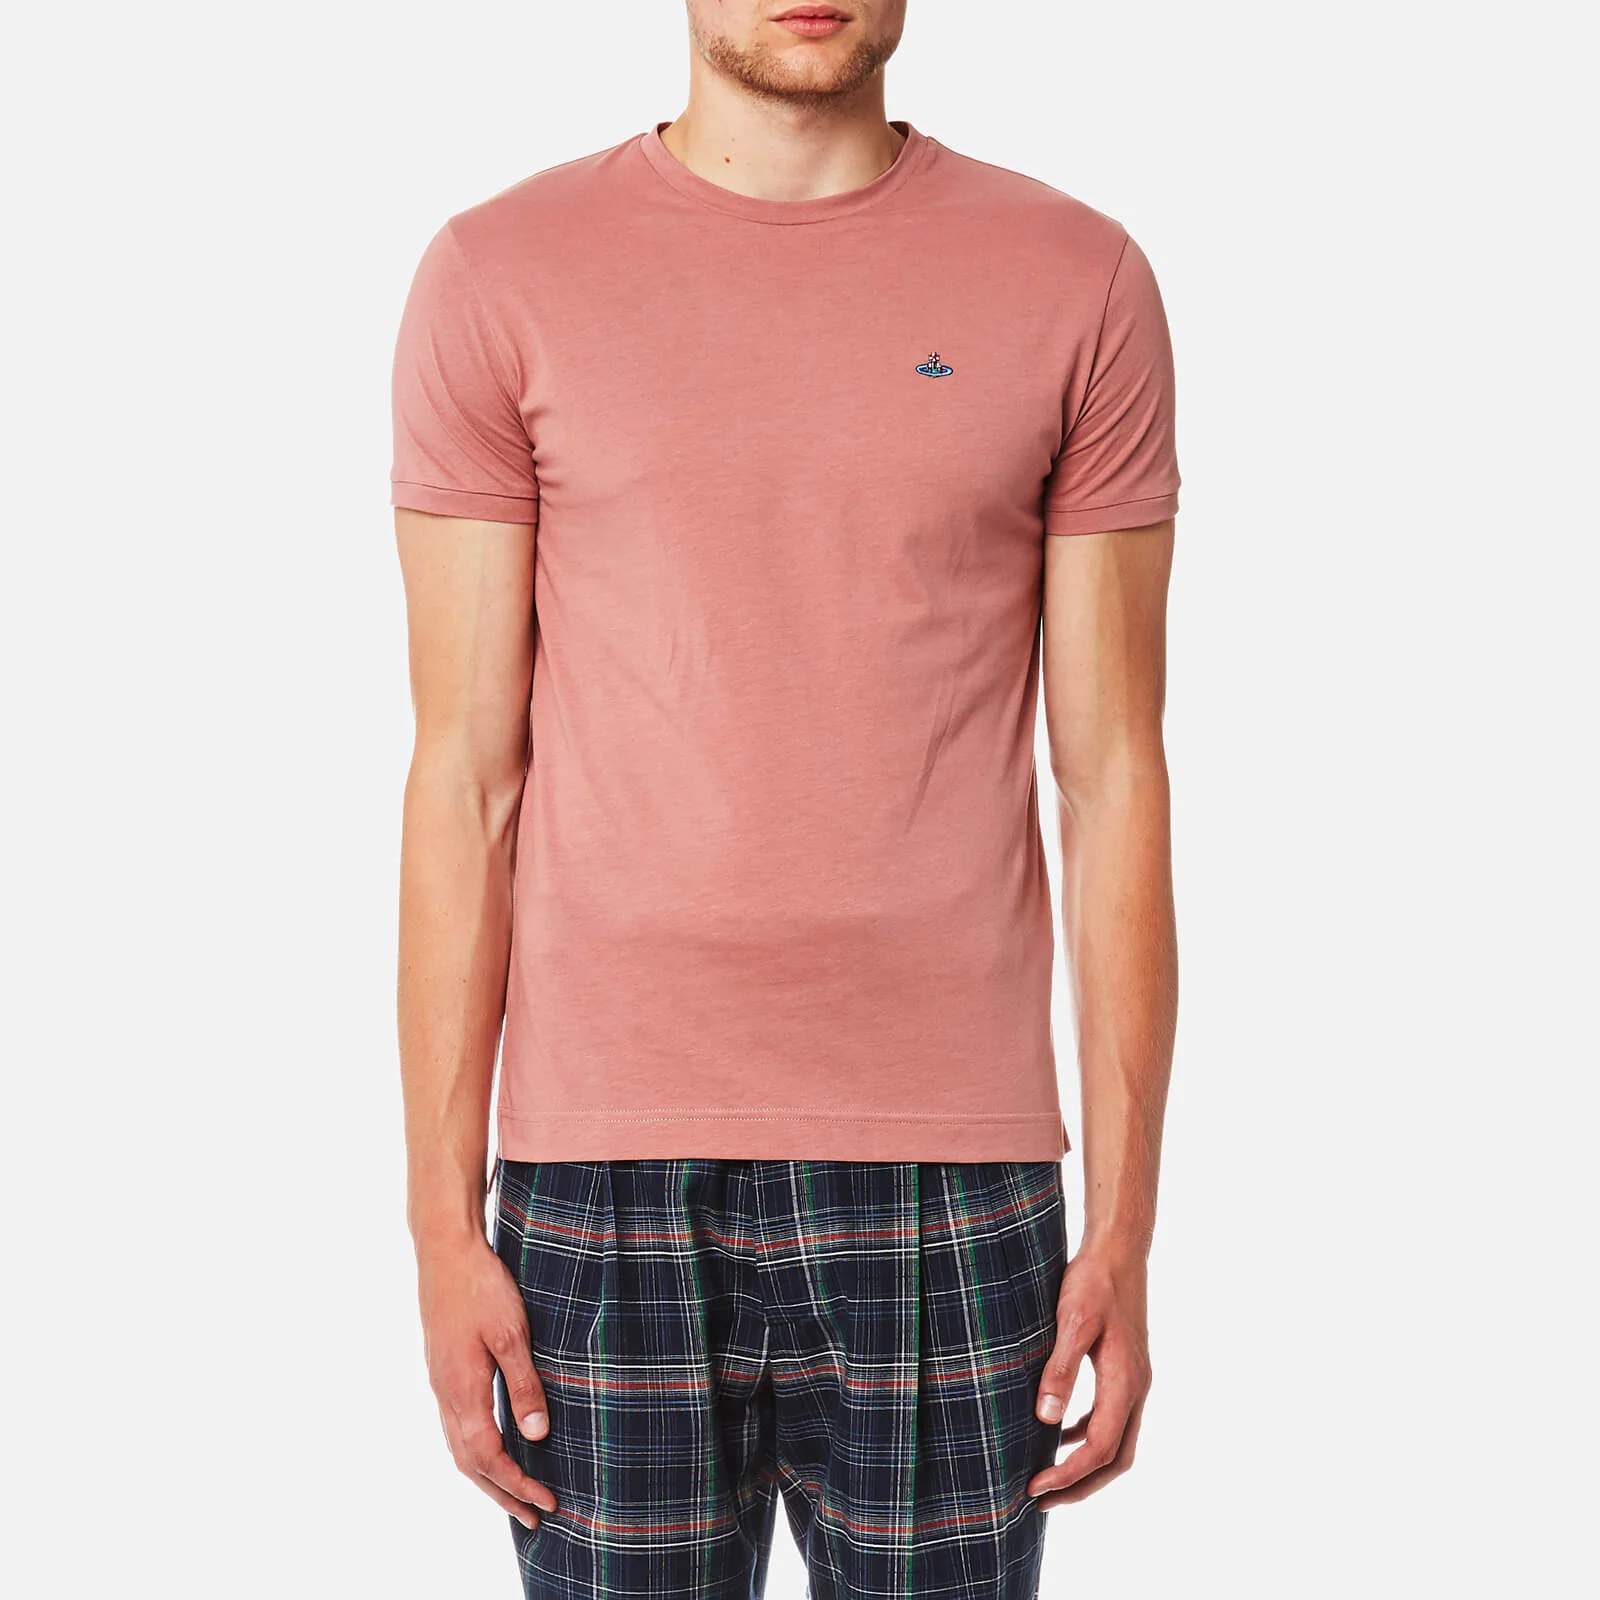 Vivienne Westwood Men's Organic Jersey Peru T-Shirt - Pink Image 1